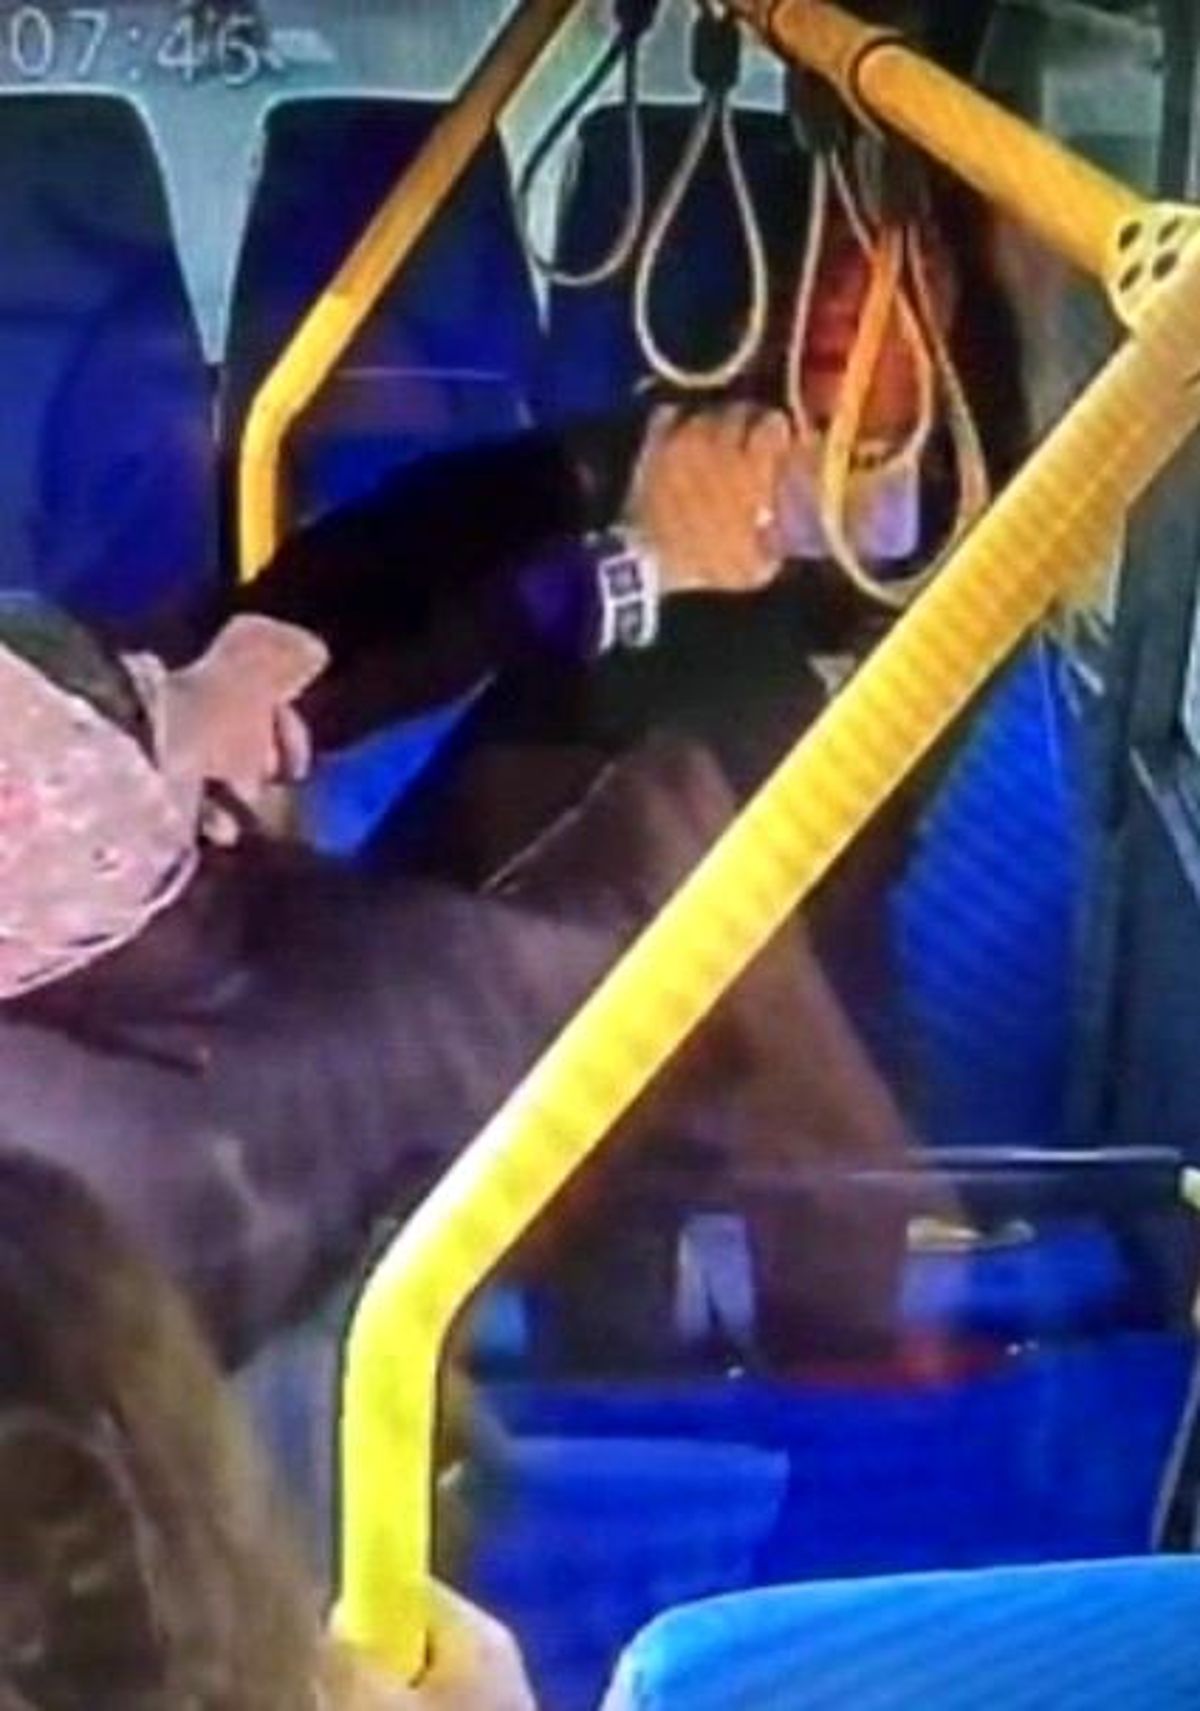 Mersin'de minibüste iki bayanın hengamesi kameraya yansıdı